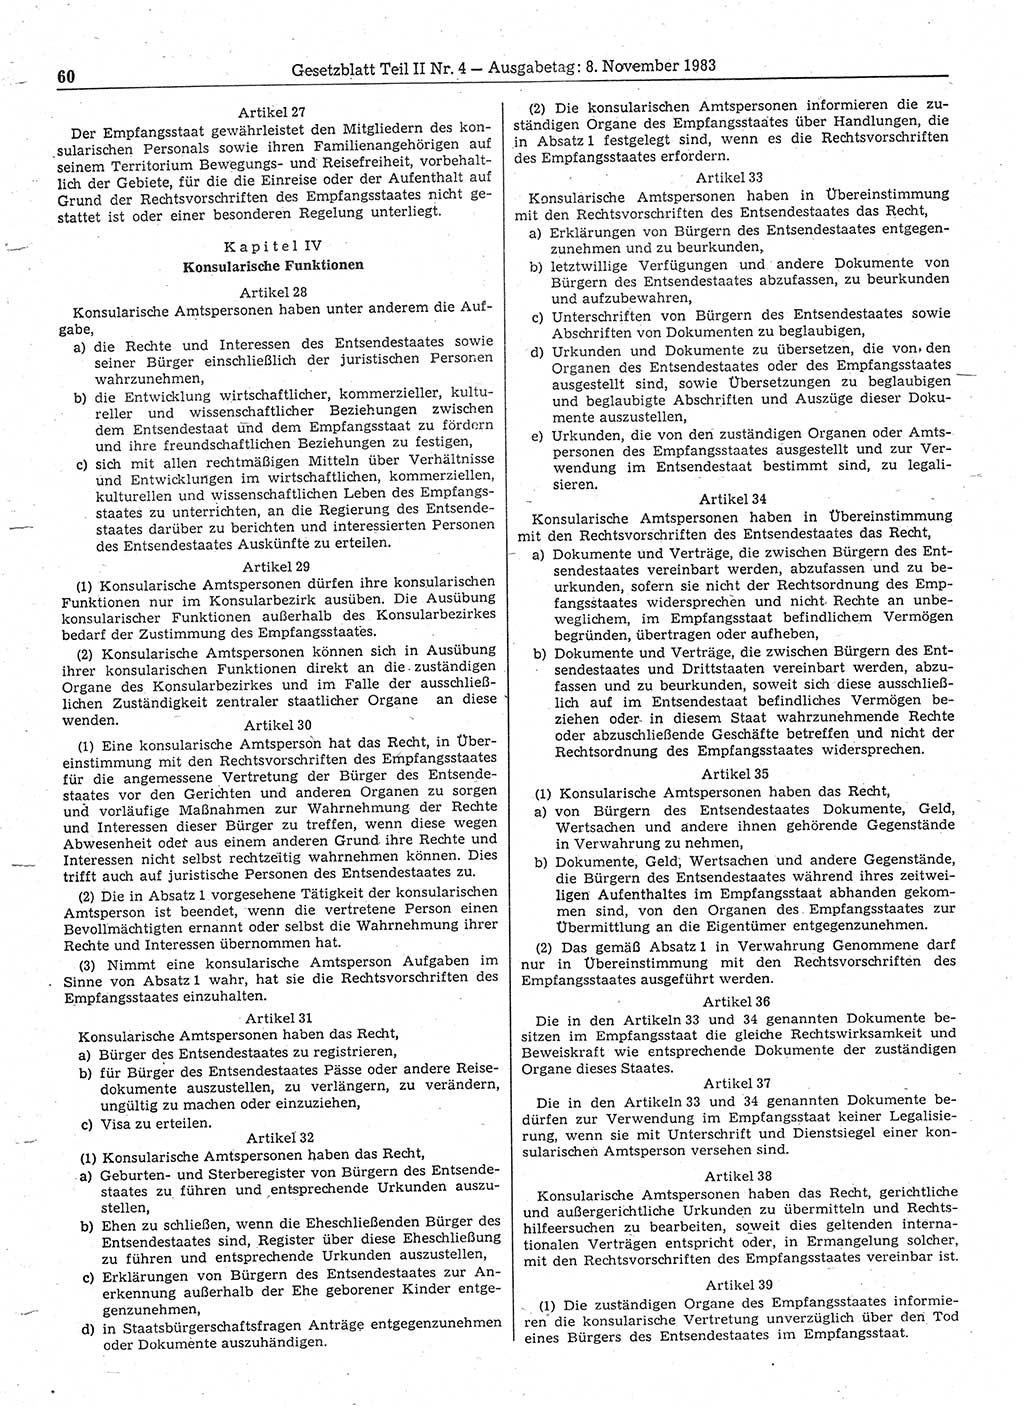 Gesetzblatt (GBl.) der Deutschen Demokratischen Republik (DDR) Teil ⅠⅠ 1983, Seite 60 (GBl. DDR ⅠⅠ 1983, S. 60)